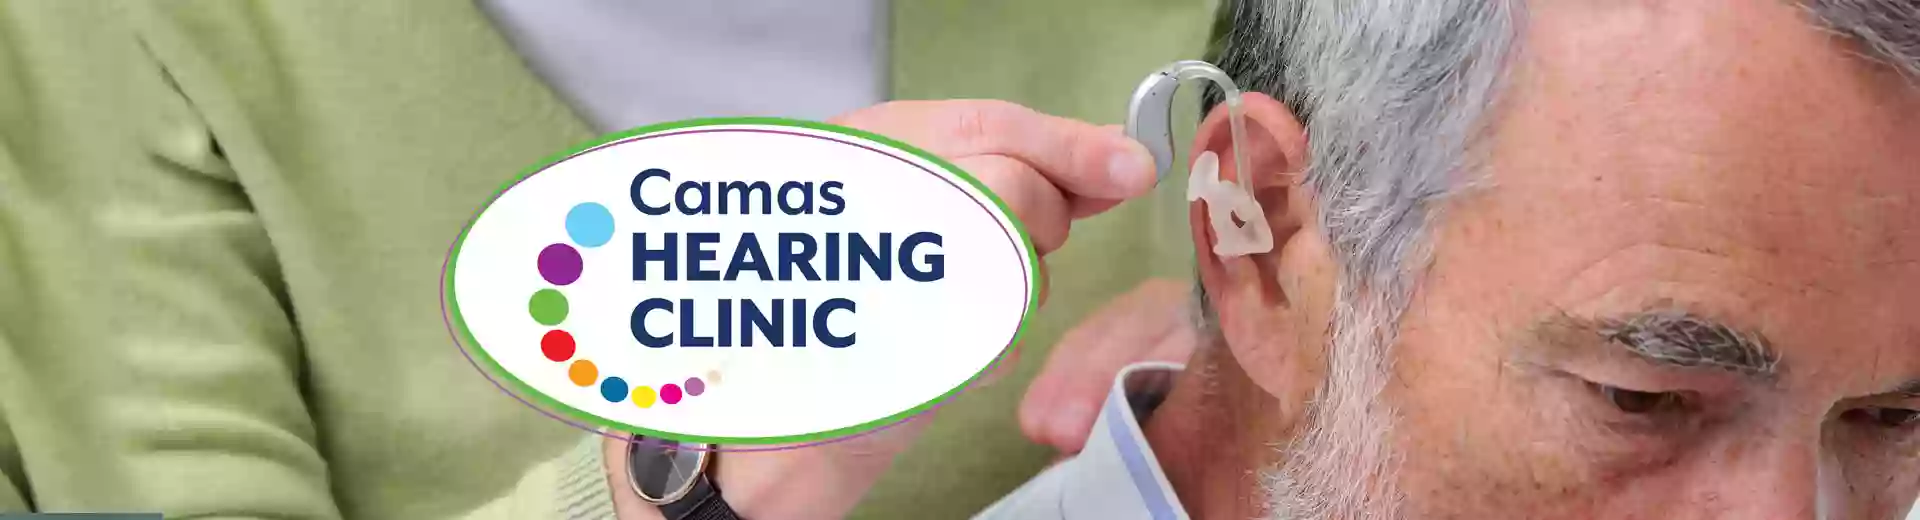 Camas Hearing Clinic